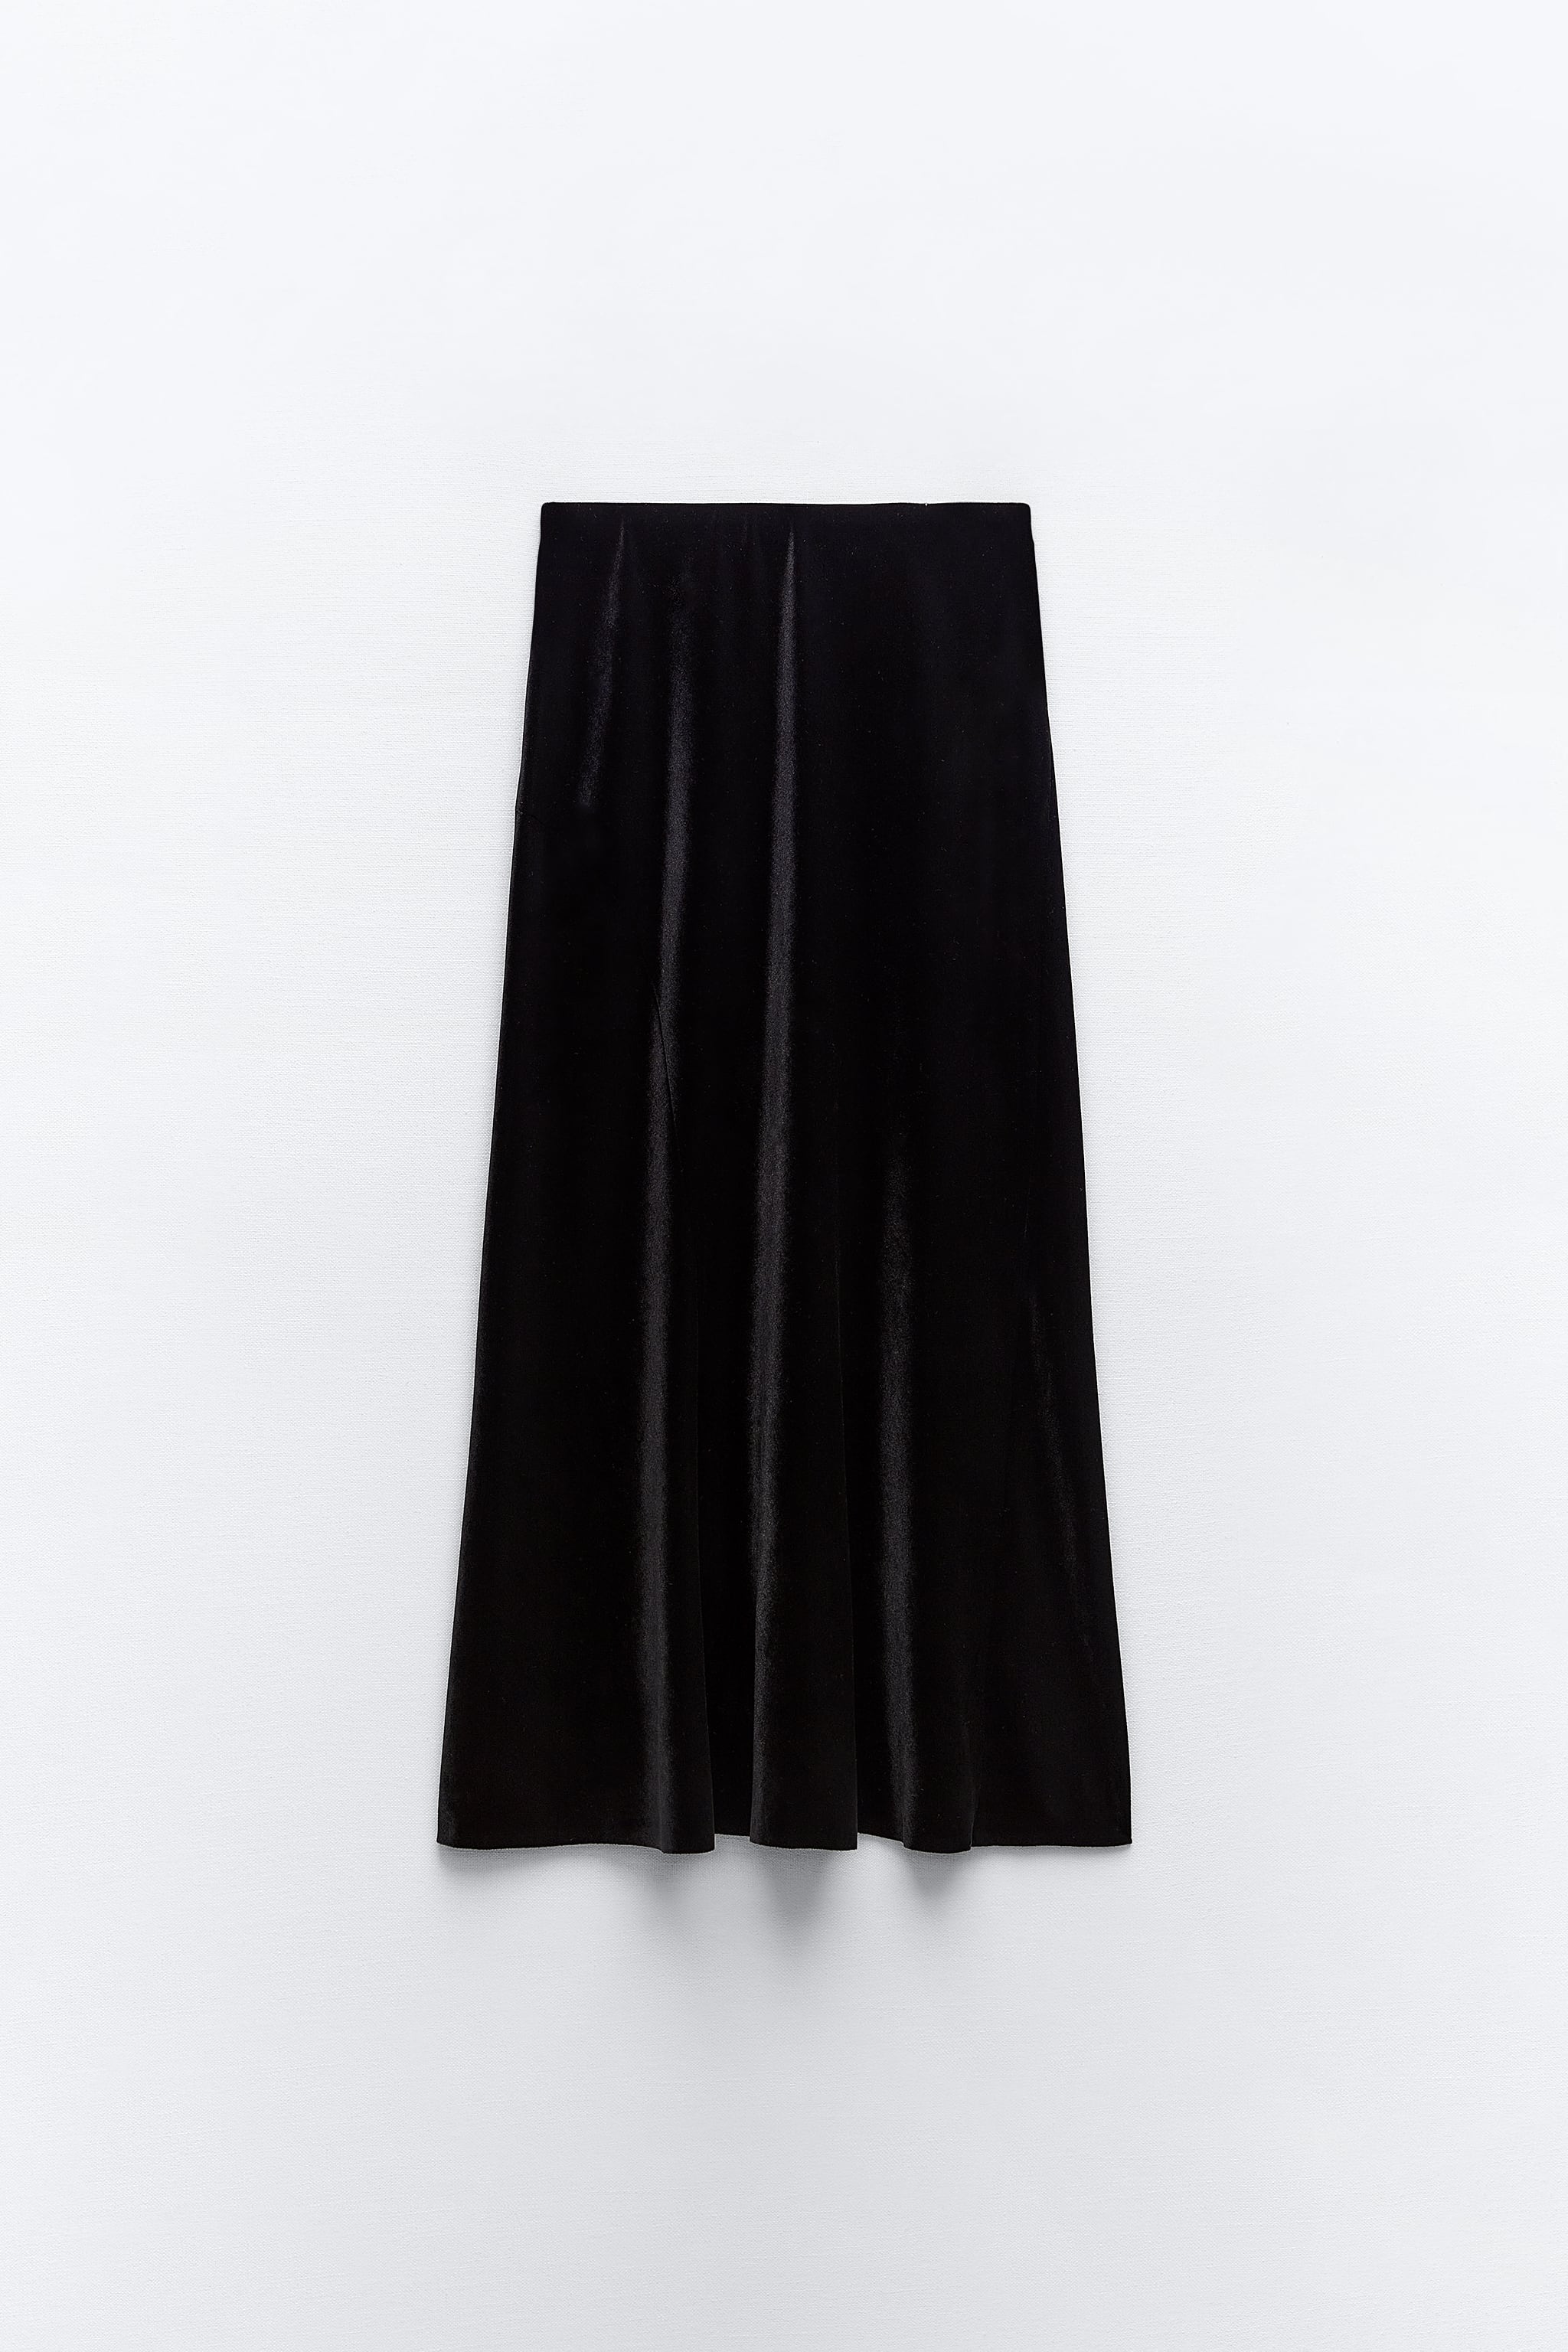 Zara + Velvet Midi Skirt